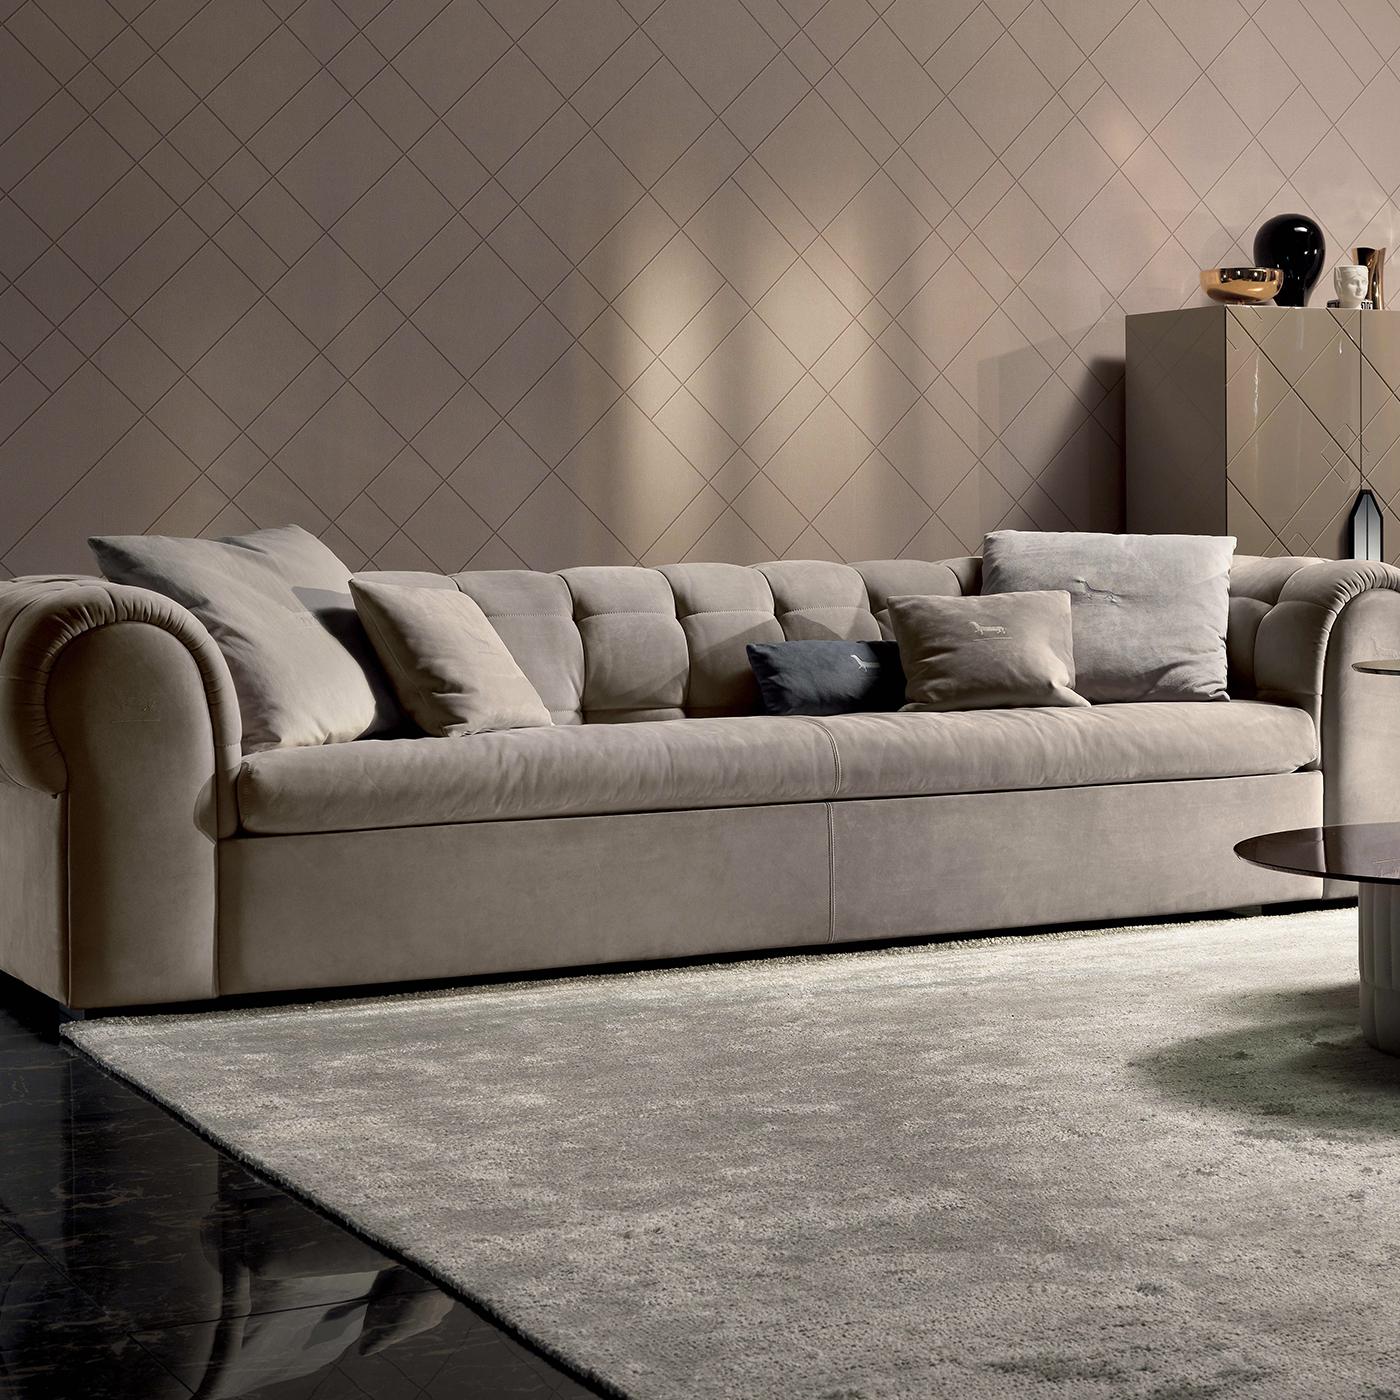 Italian Bold Leather Sofa